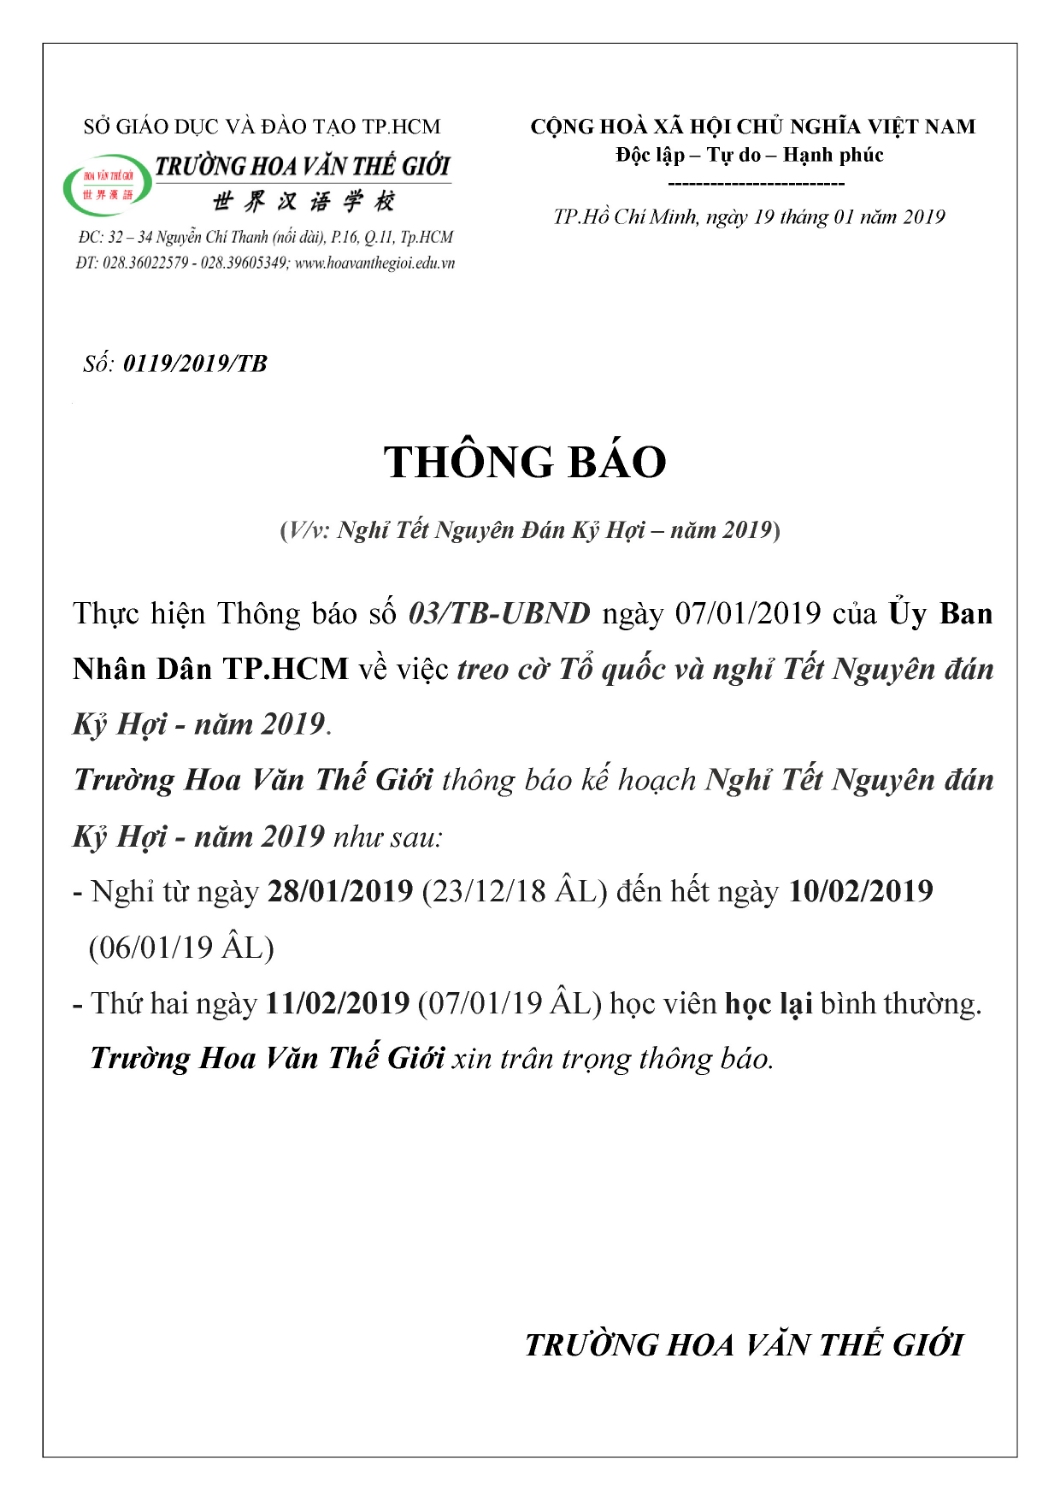 THONG BAO NGHI TET NGUYEN DAN 2019